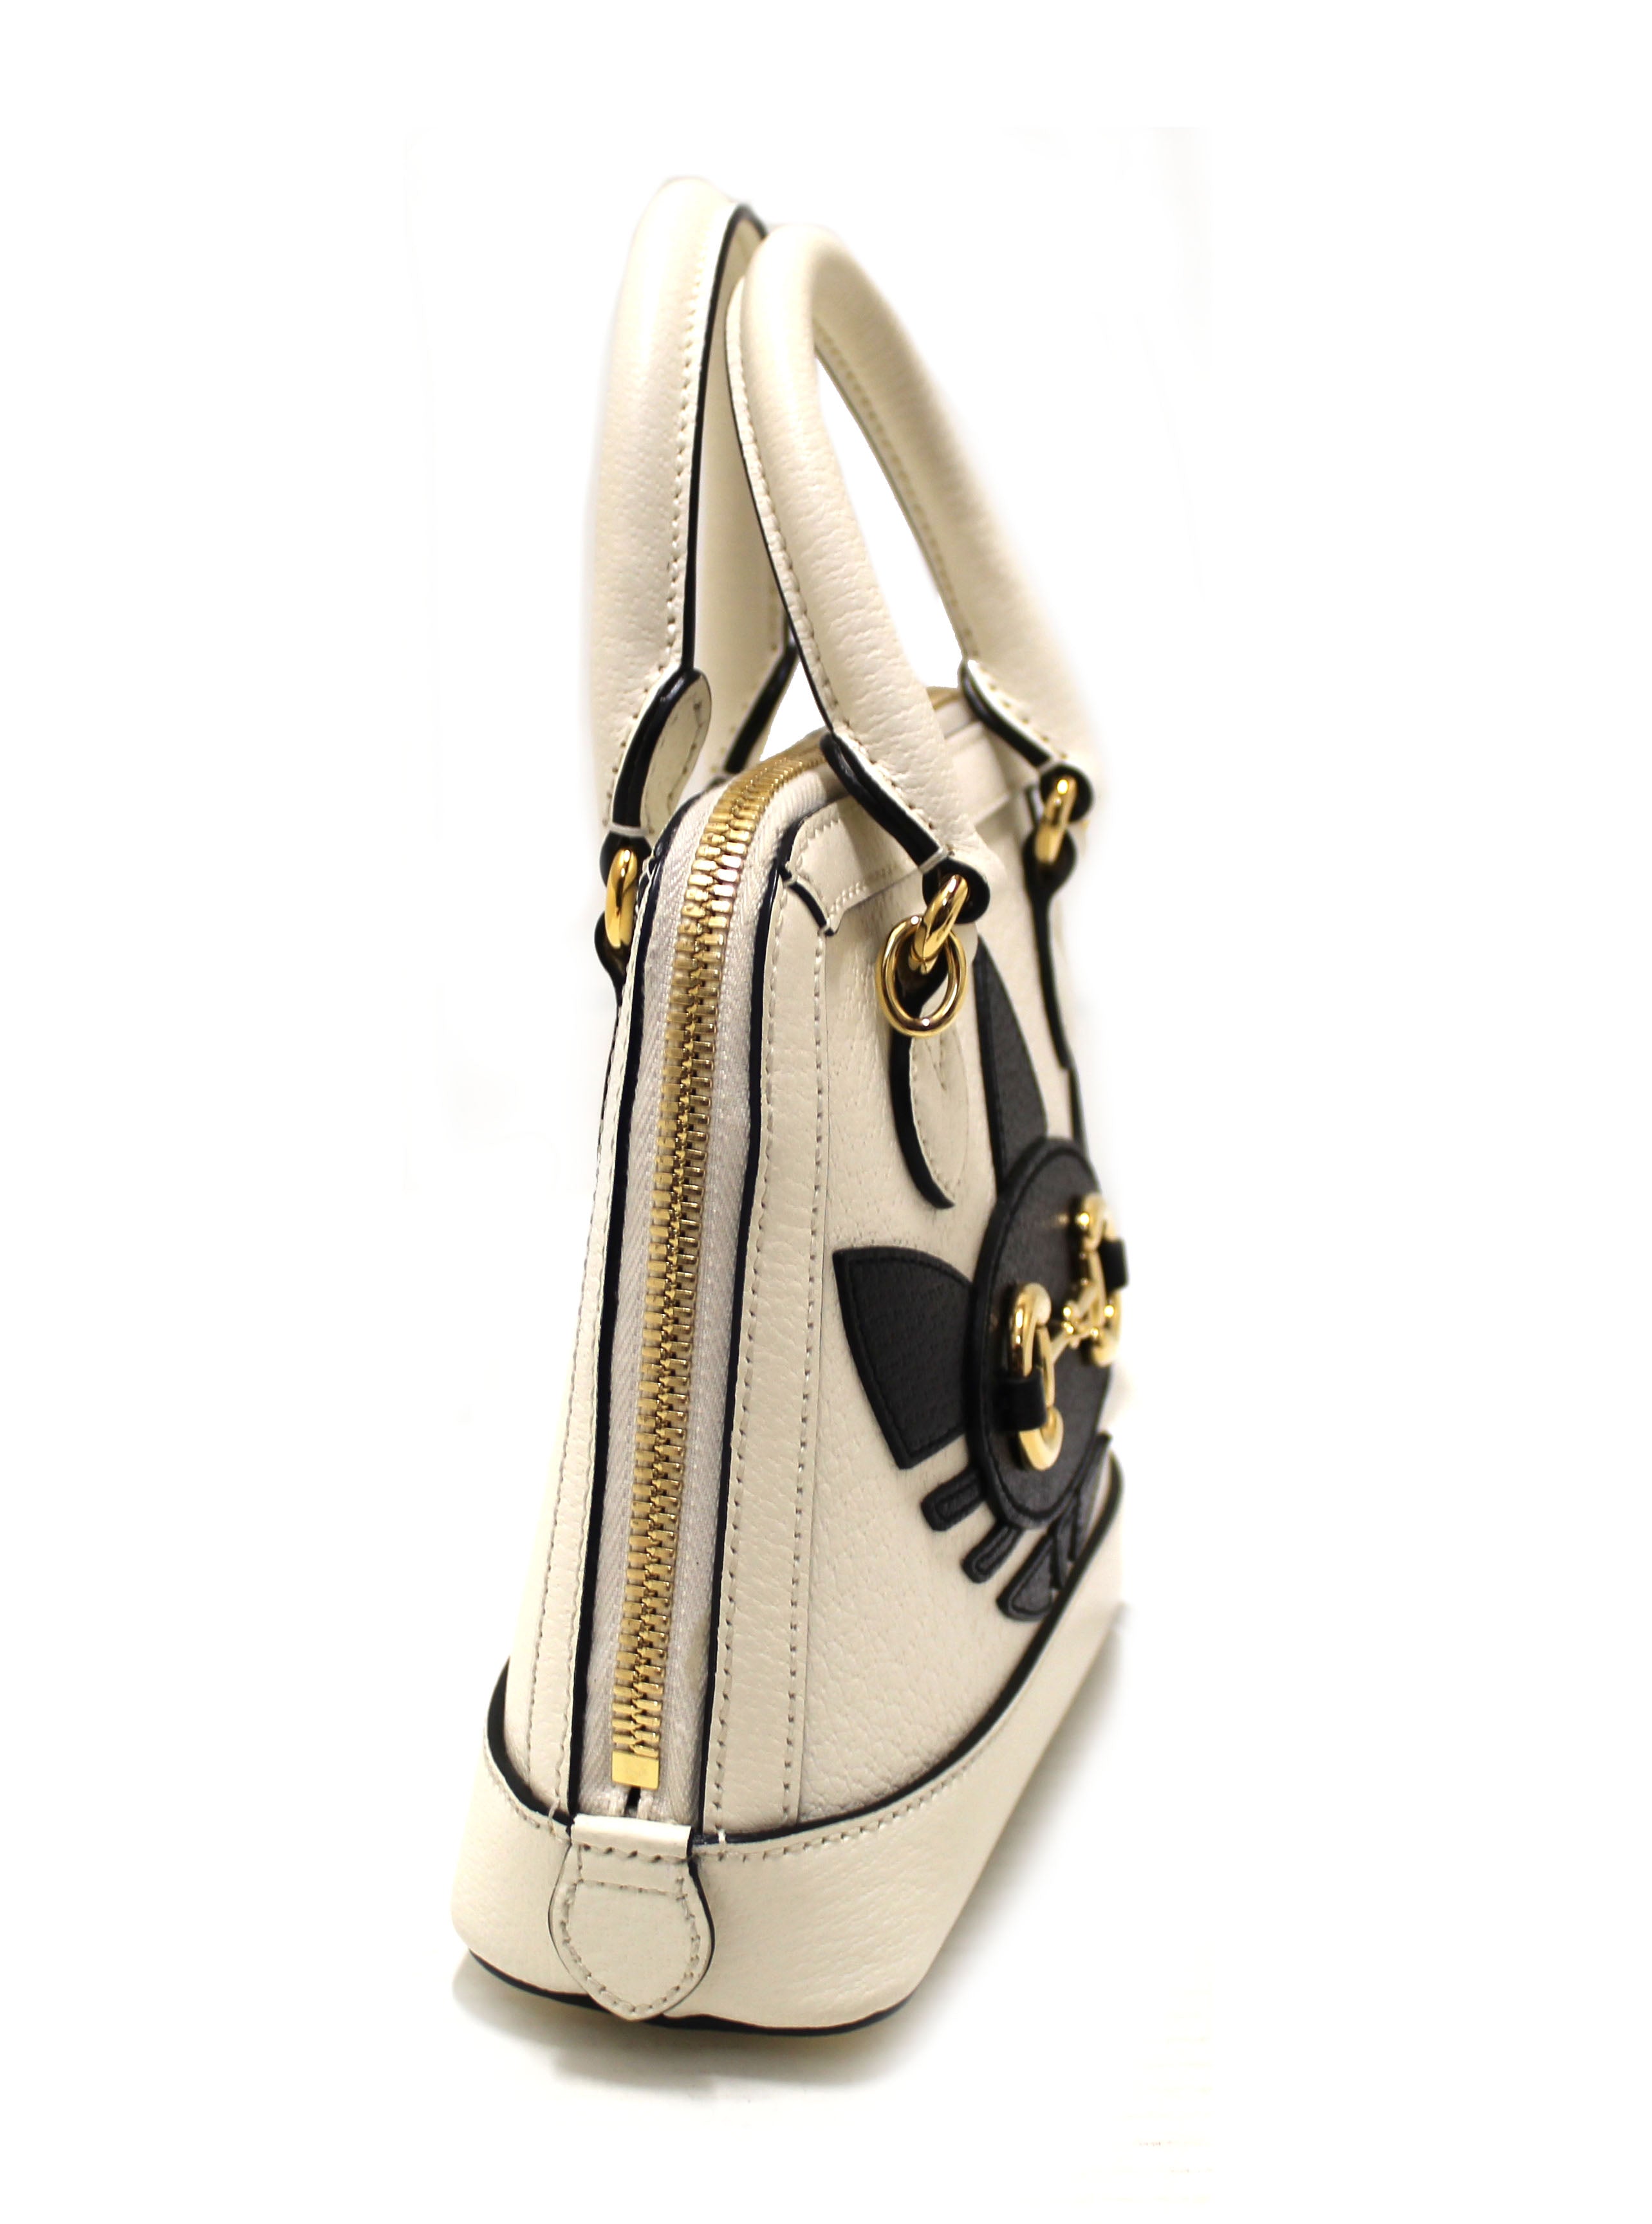 Gucci Horsebit 1955 mini top handle bag